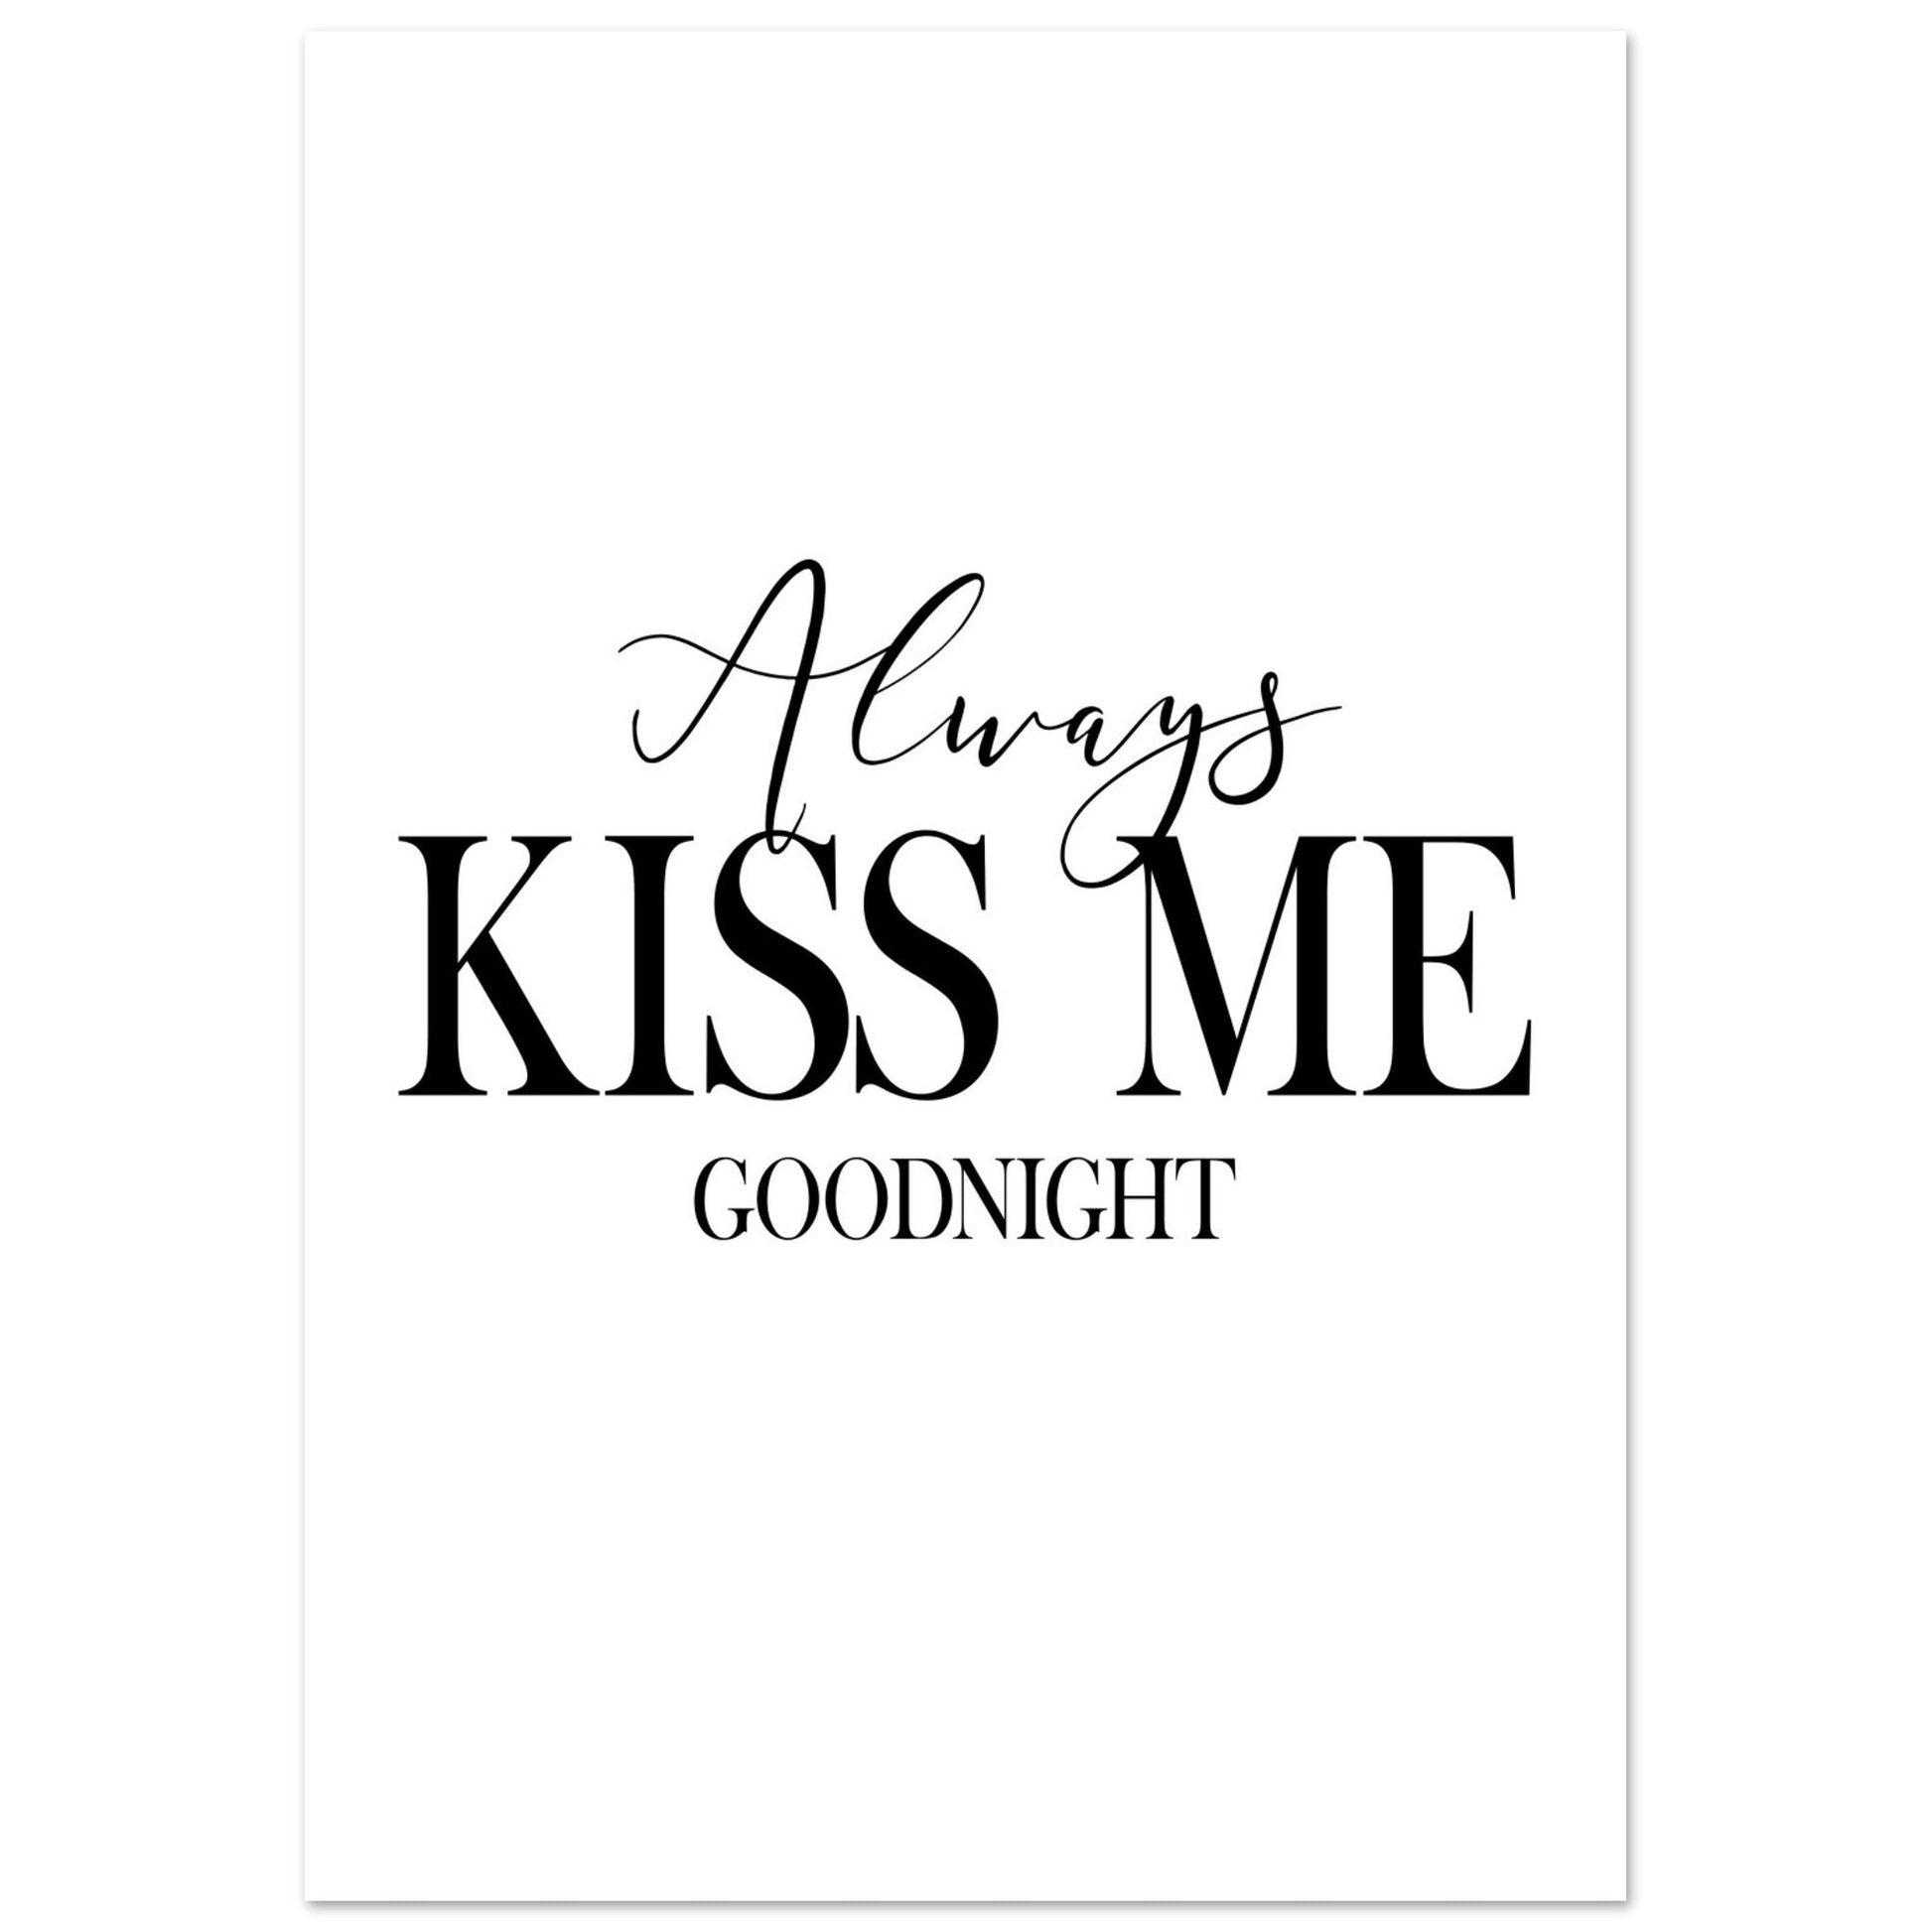 Always Kiss Me Good Night Print, bedroom, Black and white, minimalist, #illieeart